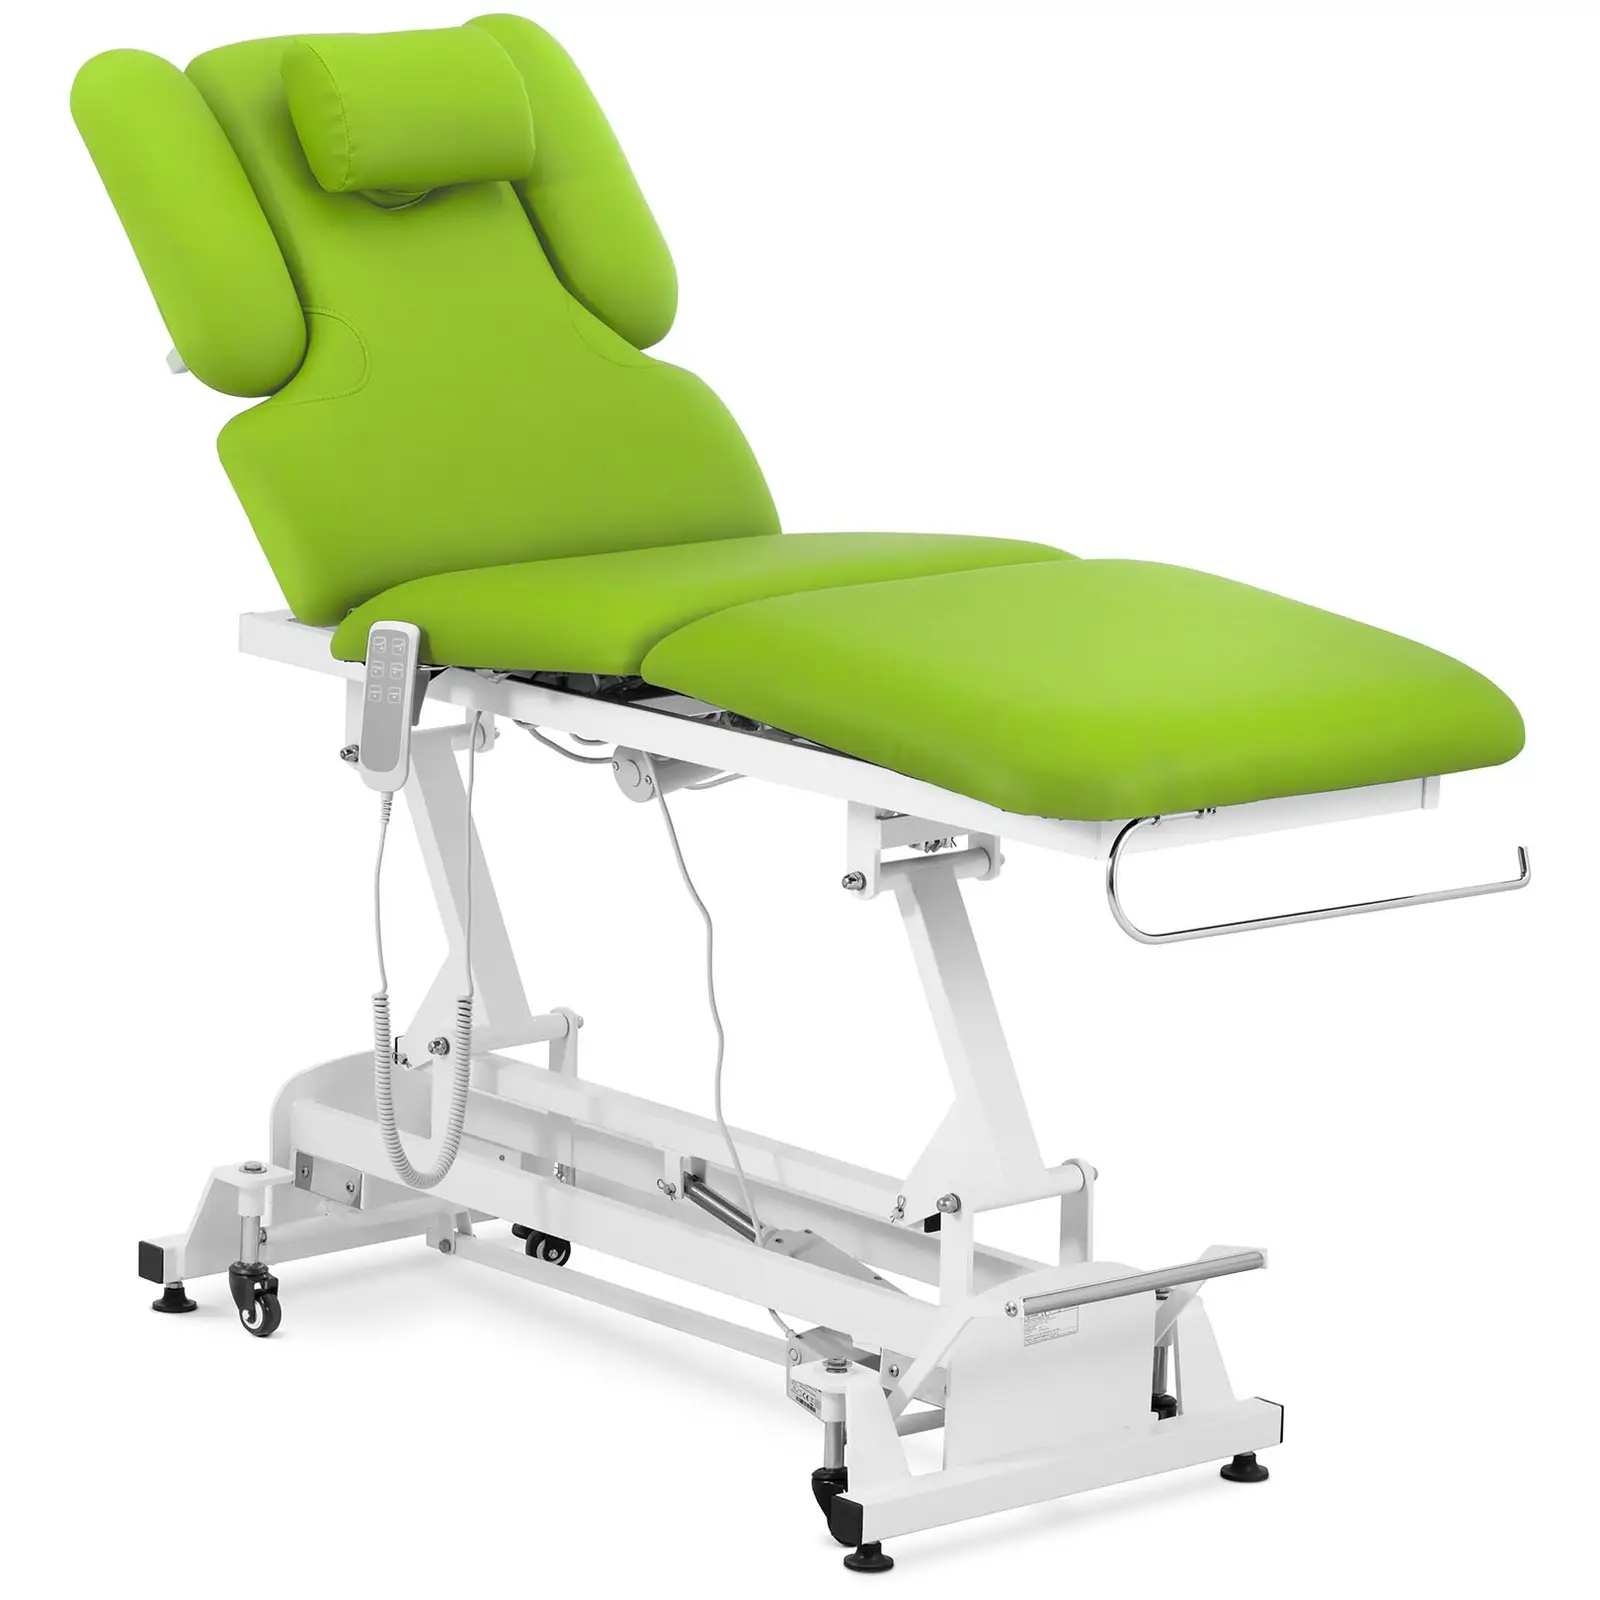 Elektrisk massagebänk - 3 motorer - 250 kg - Ljusgrön